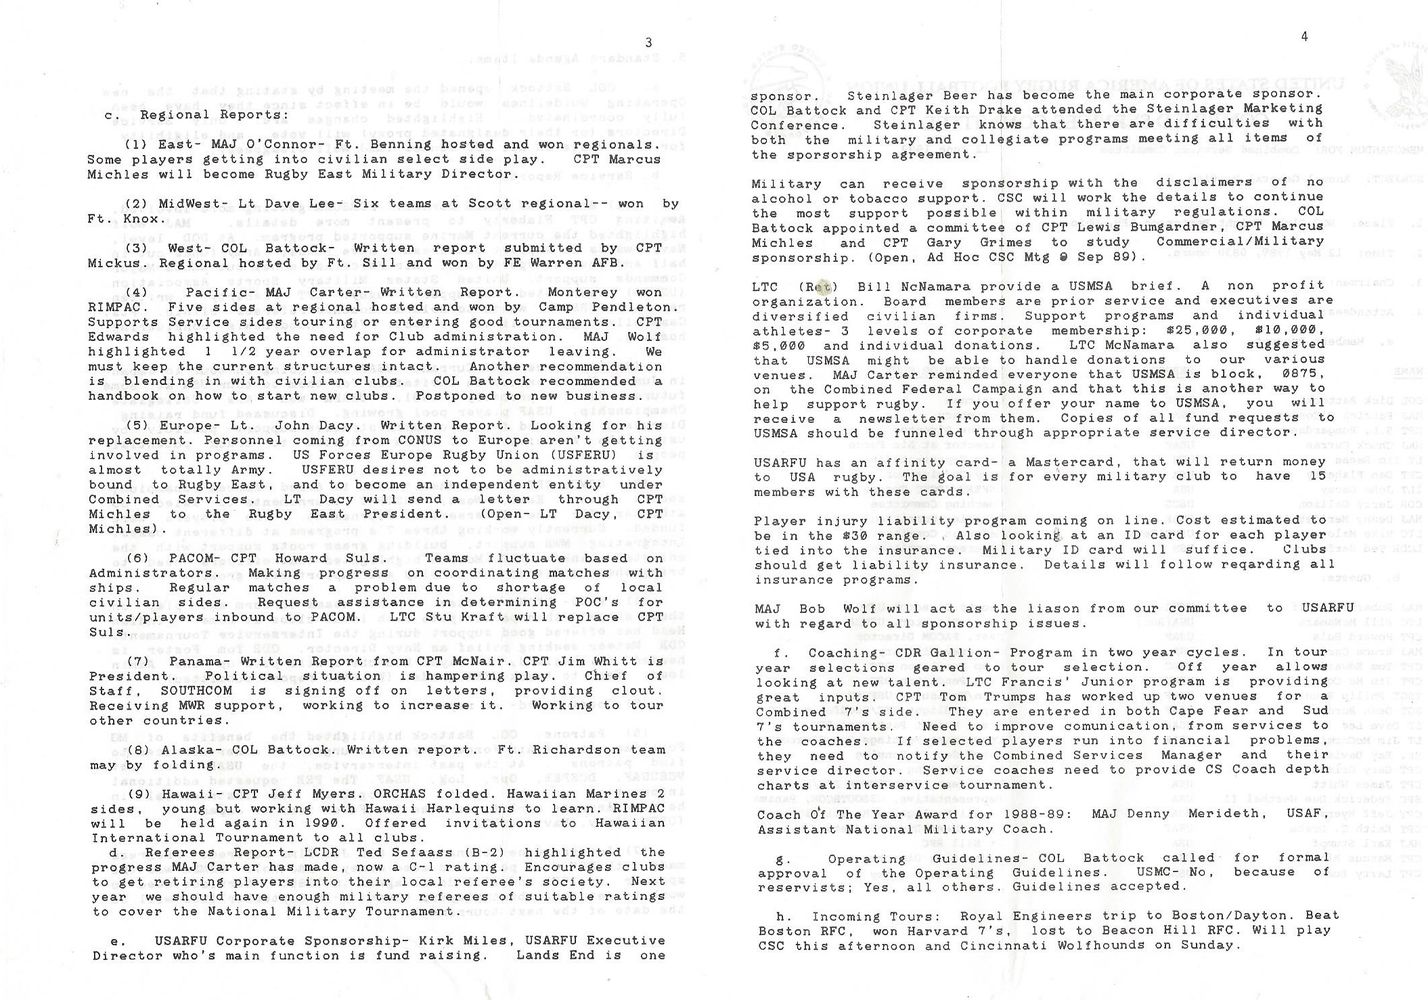 1989 09 CS Newsletter 4.jpg